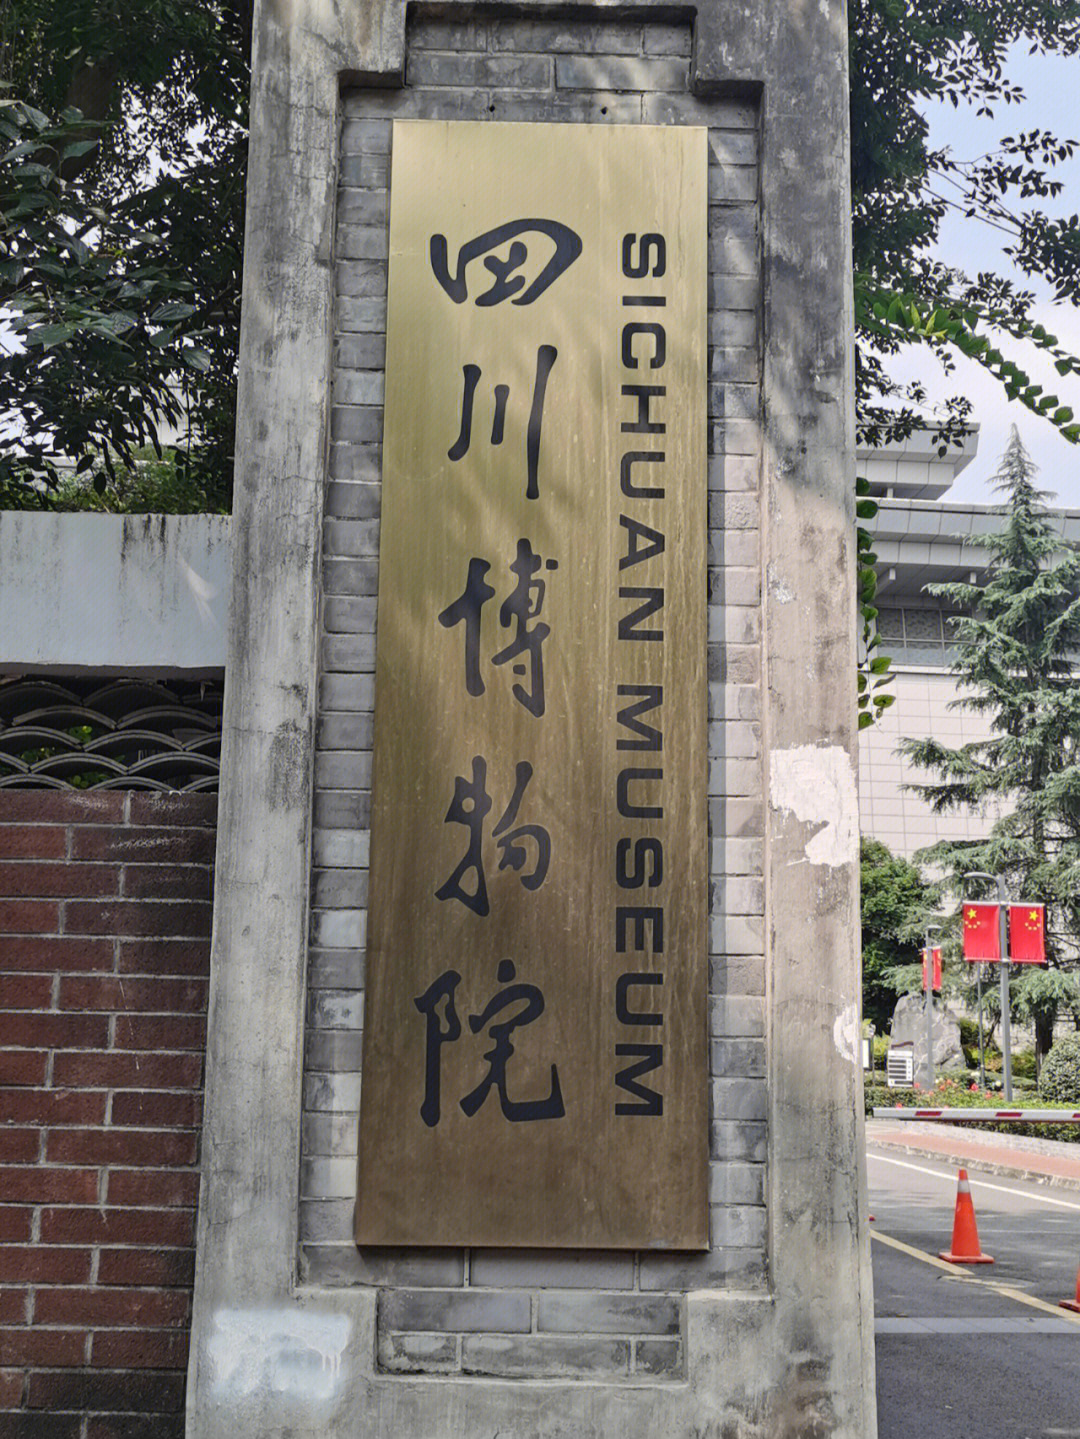 四川博物馆标志图片